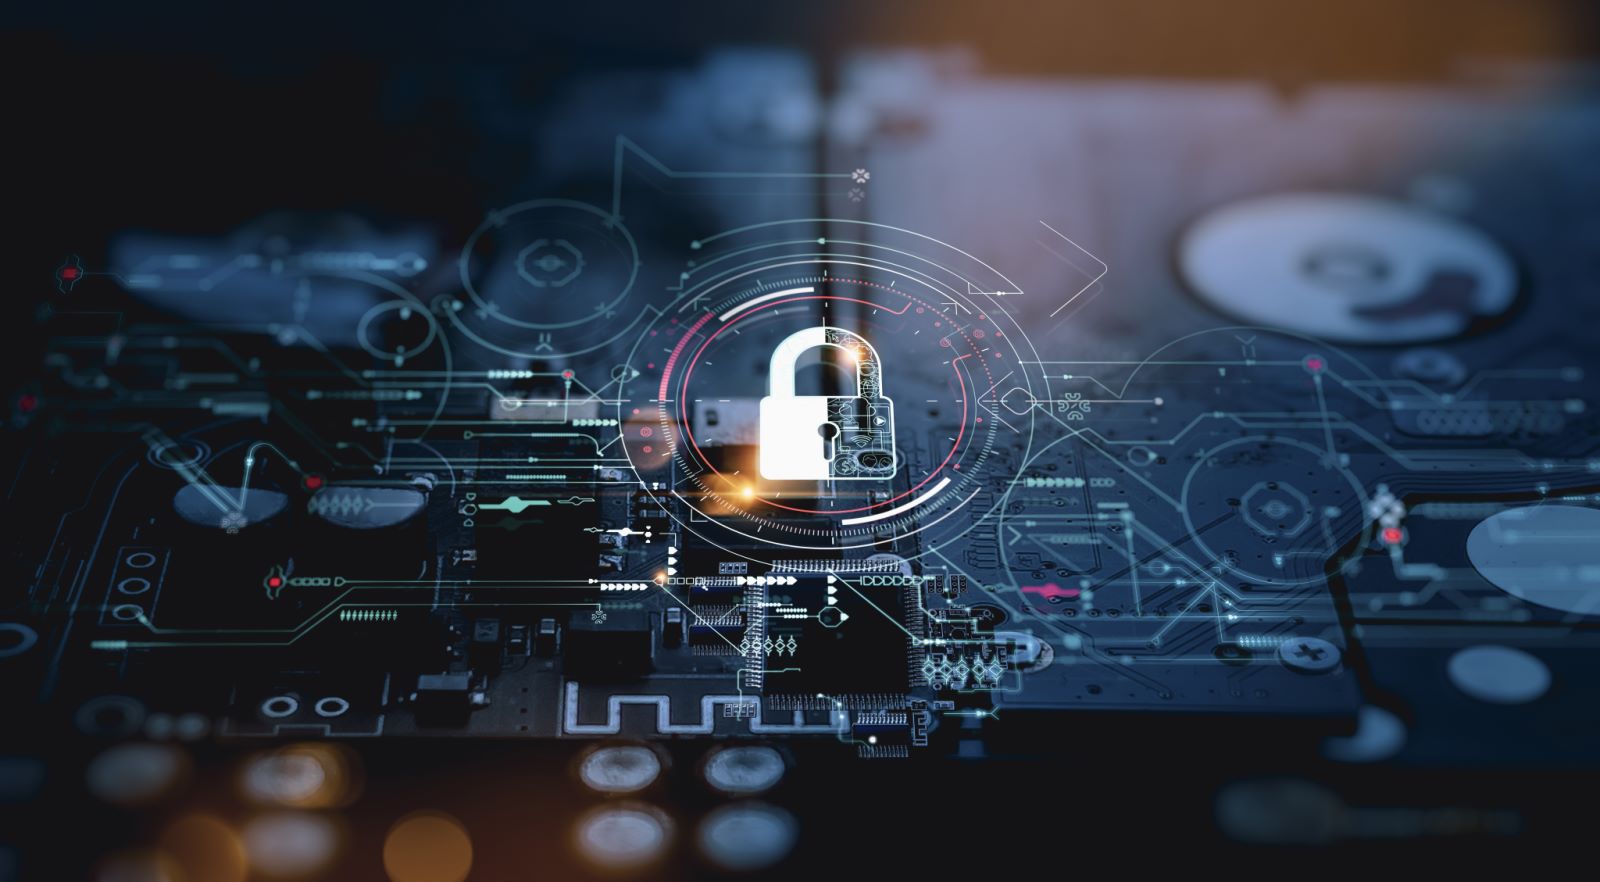 Ein mit einem Schloss gesichertes Netzwerk der Cybersicherheitstechnologie symbolisiert eine sichere Identitäts- und Zugangsmanagementlösung